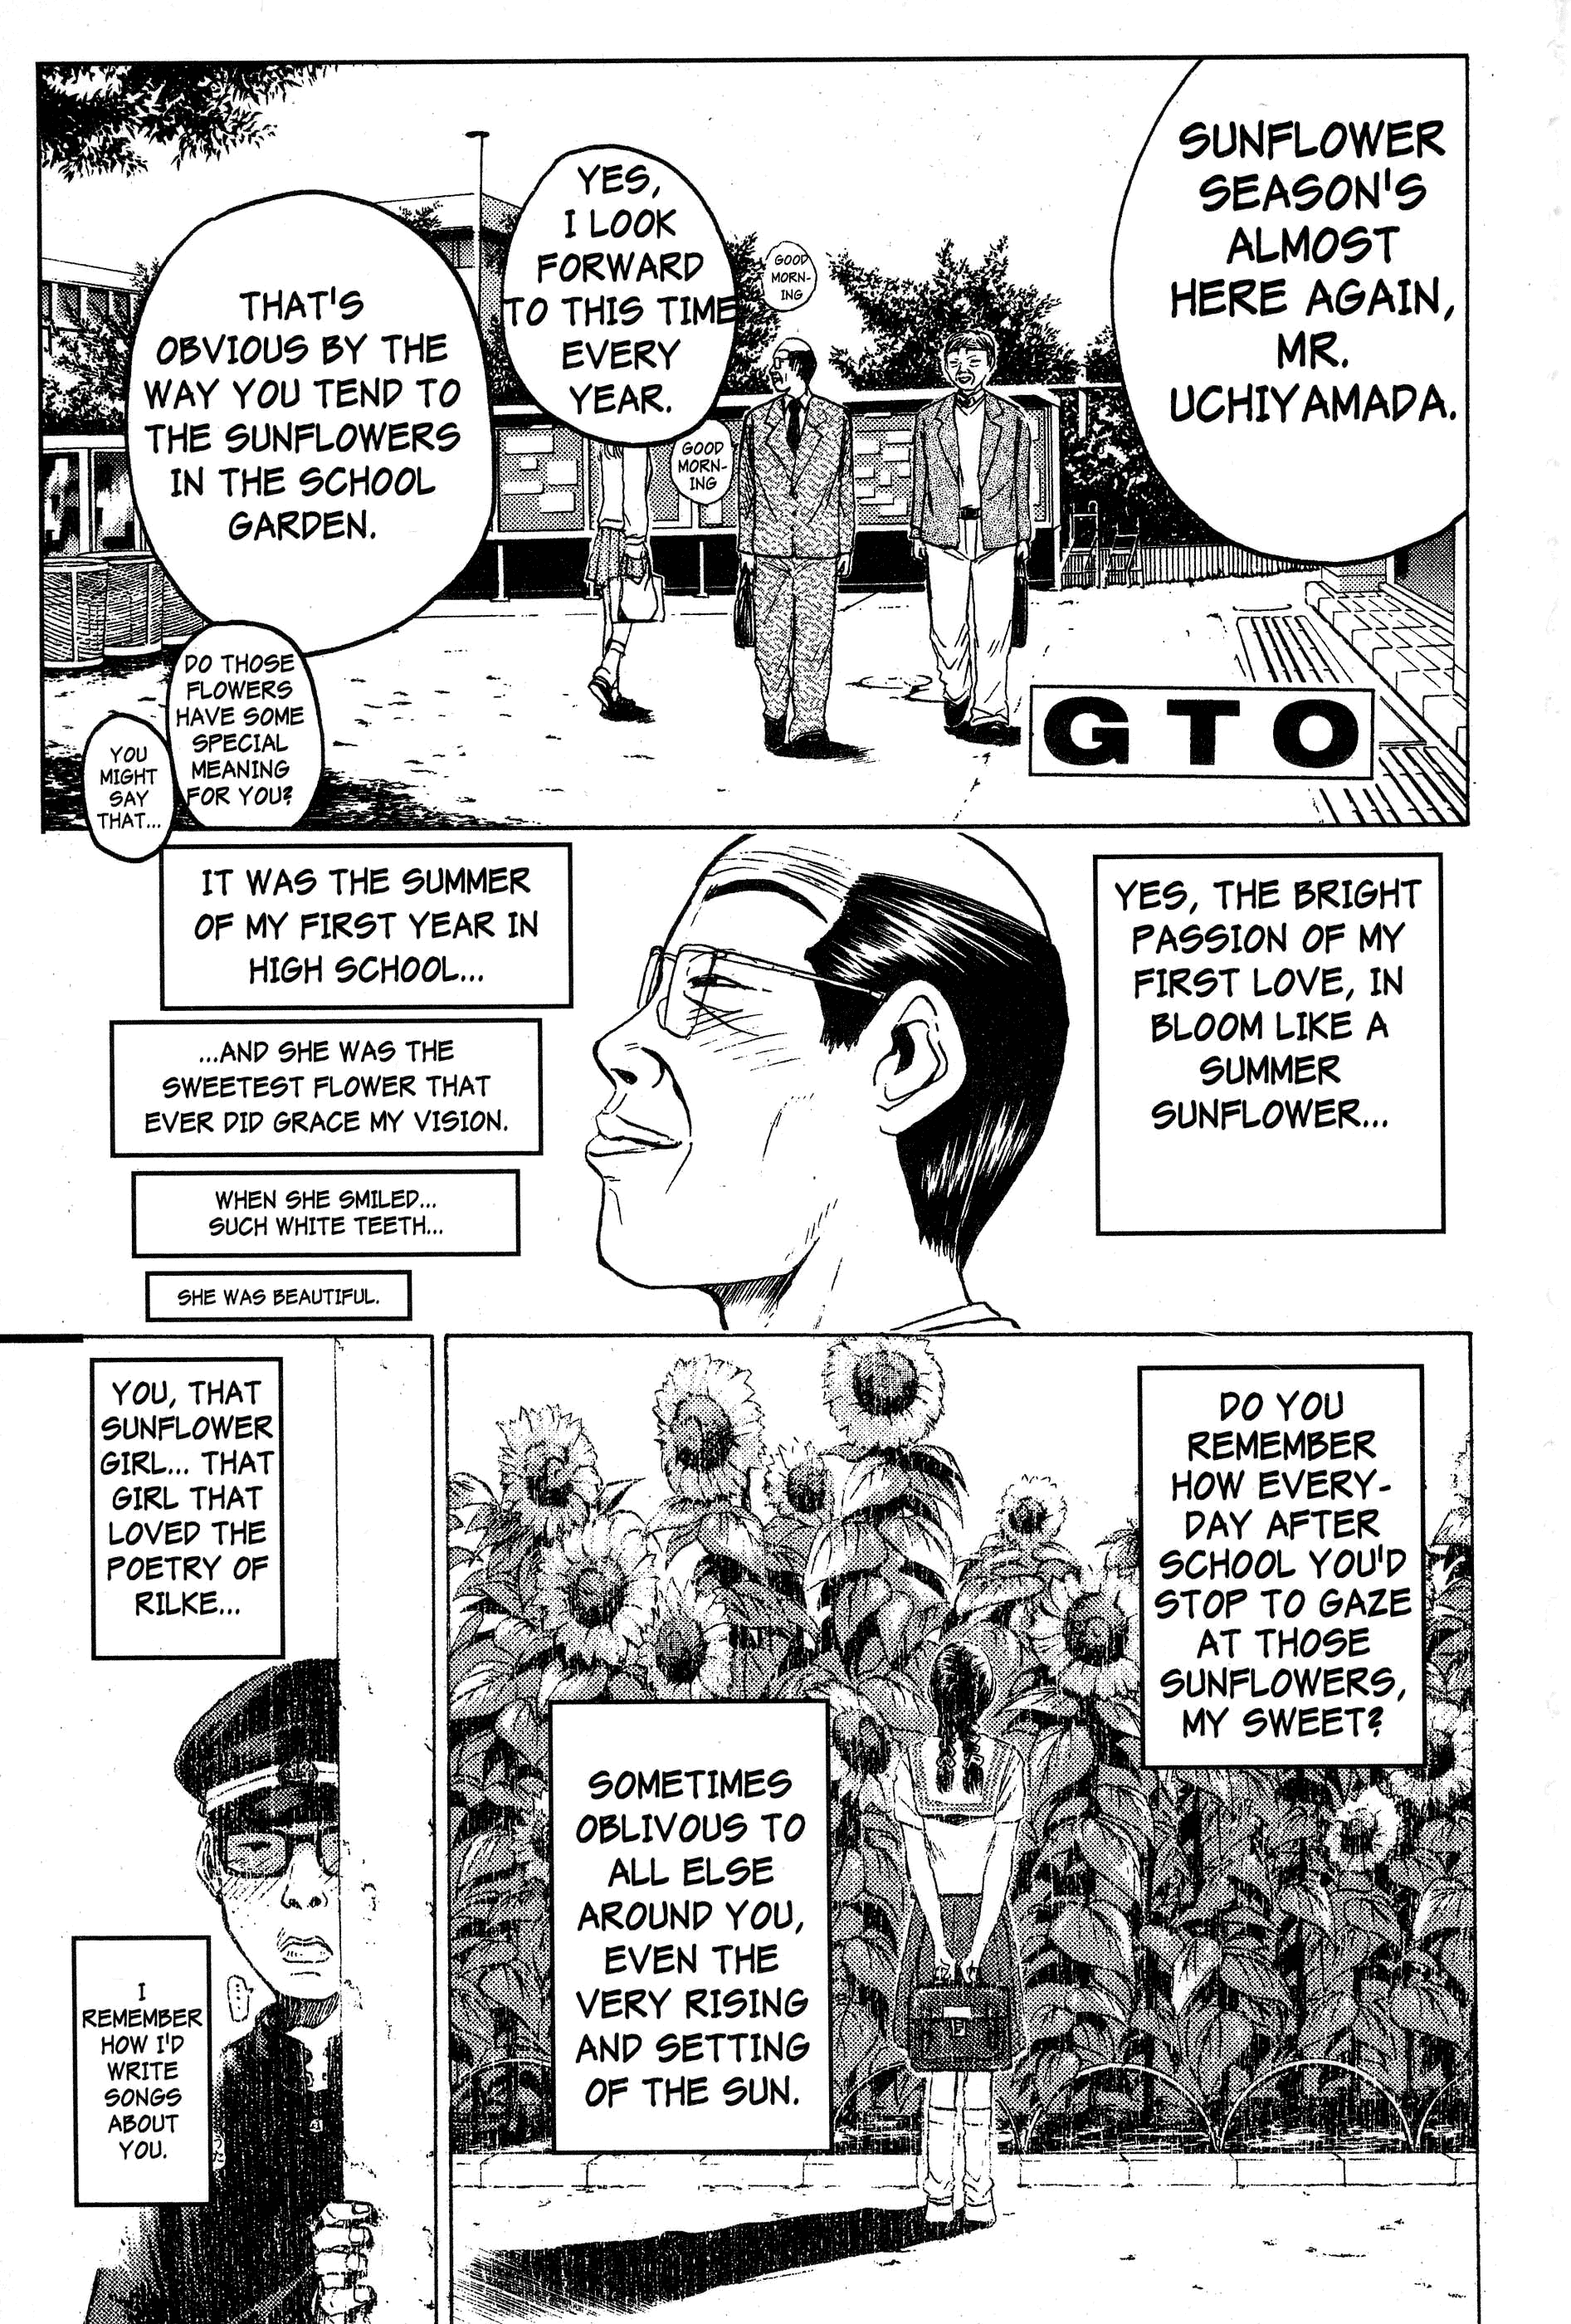 Gto - Page 1